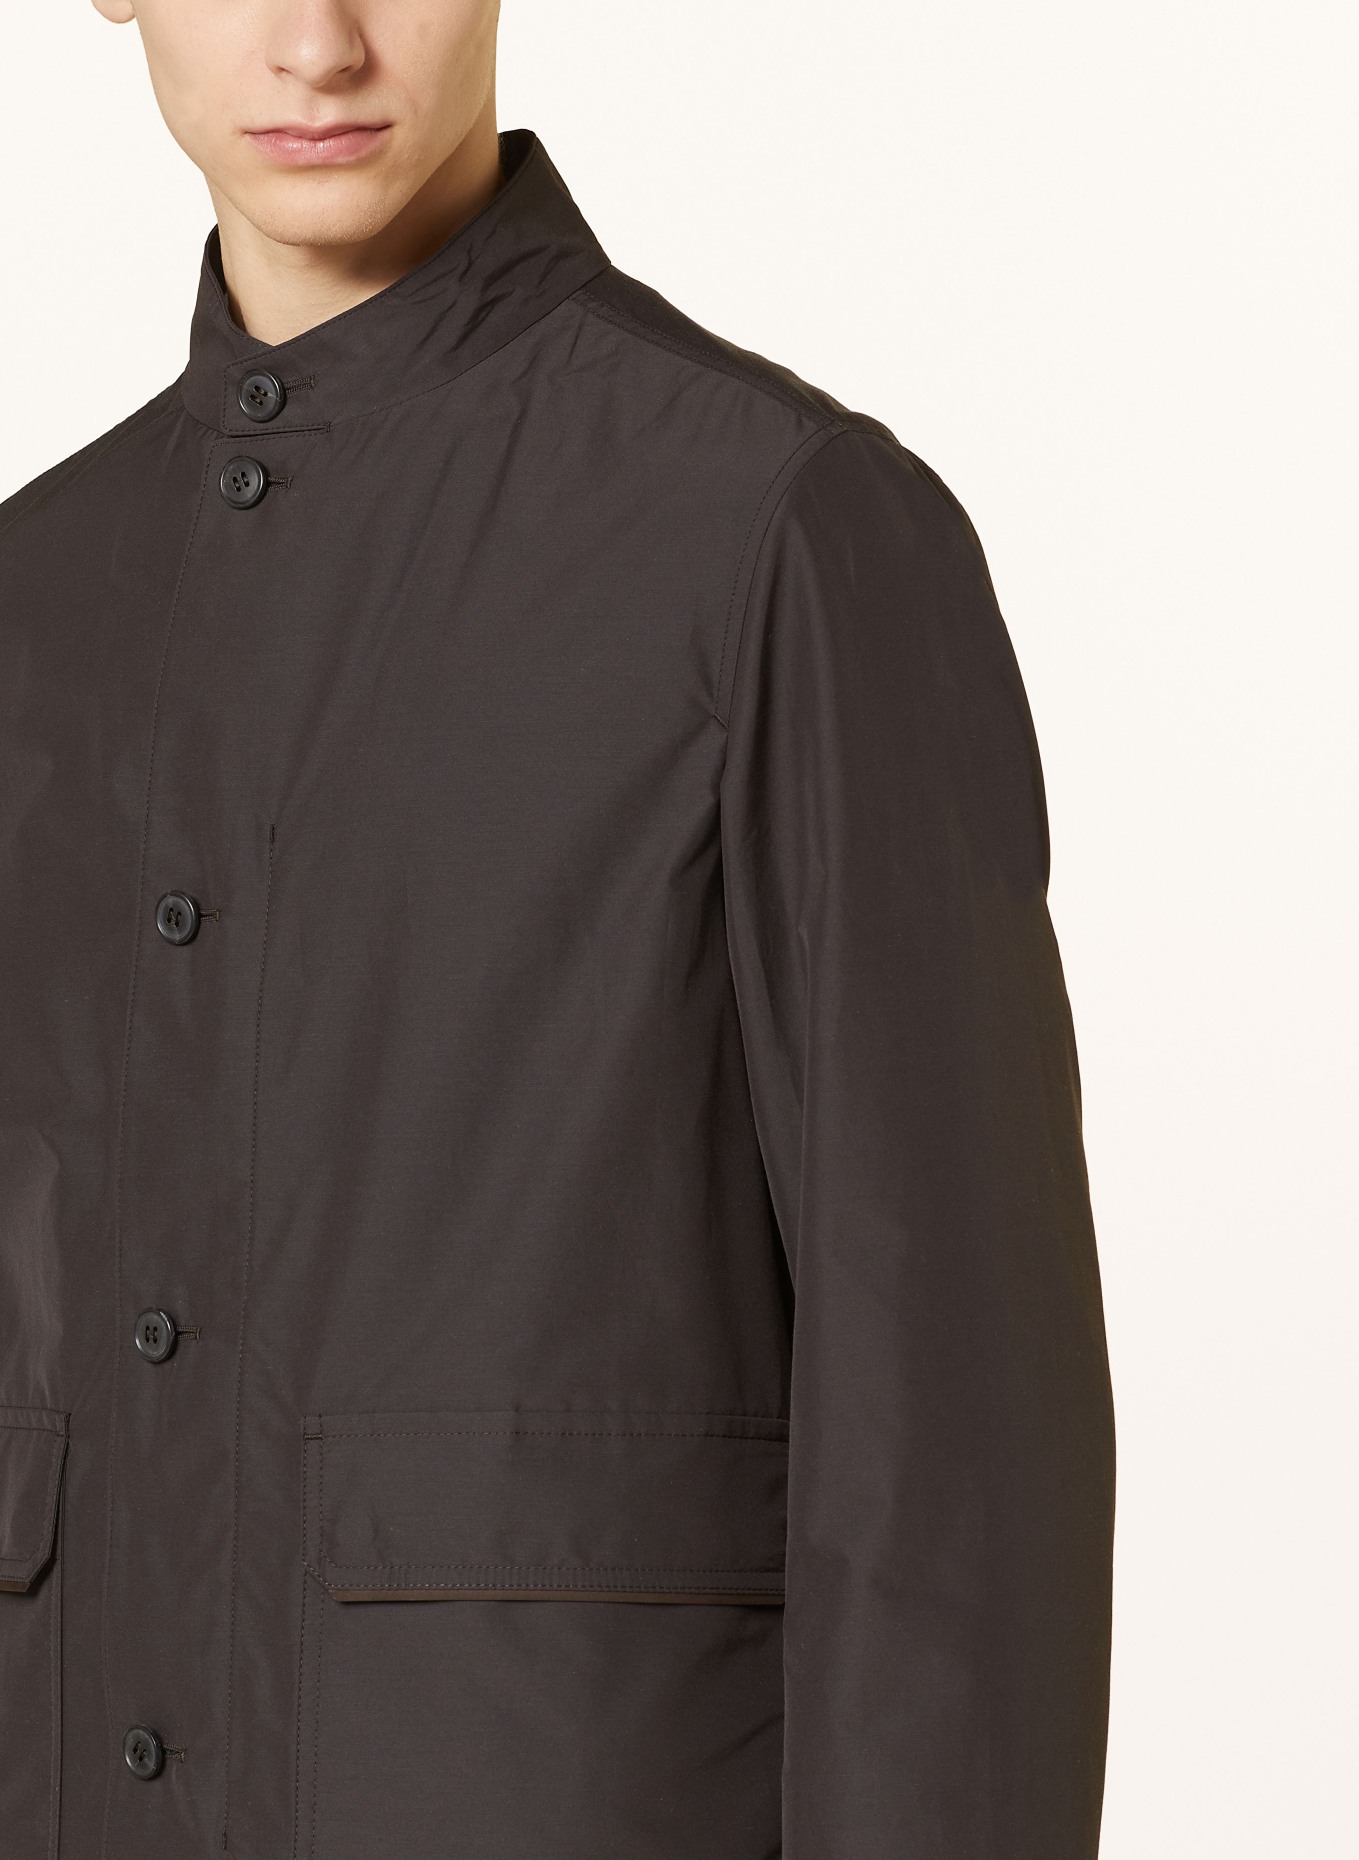 ZEGNA Jacket, Color: DARK BROWN (Image 4)